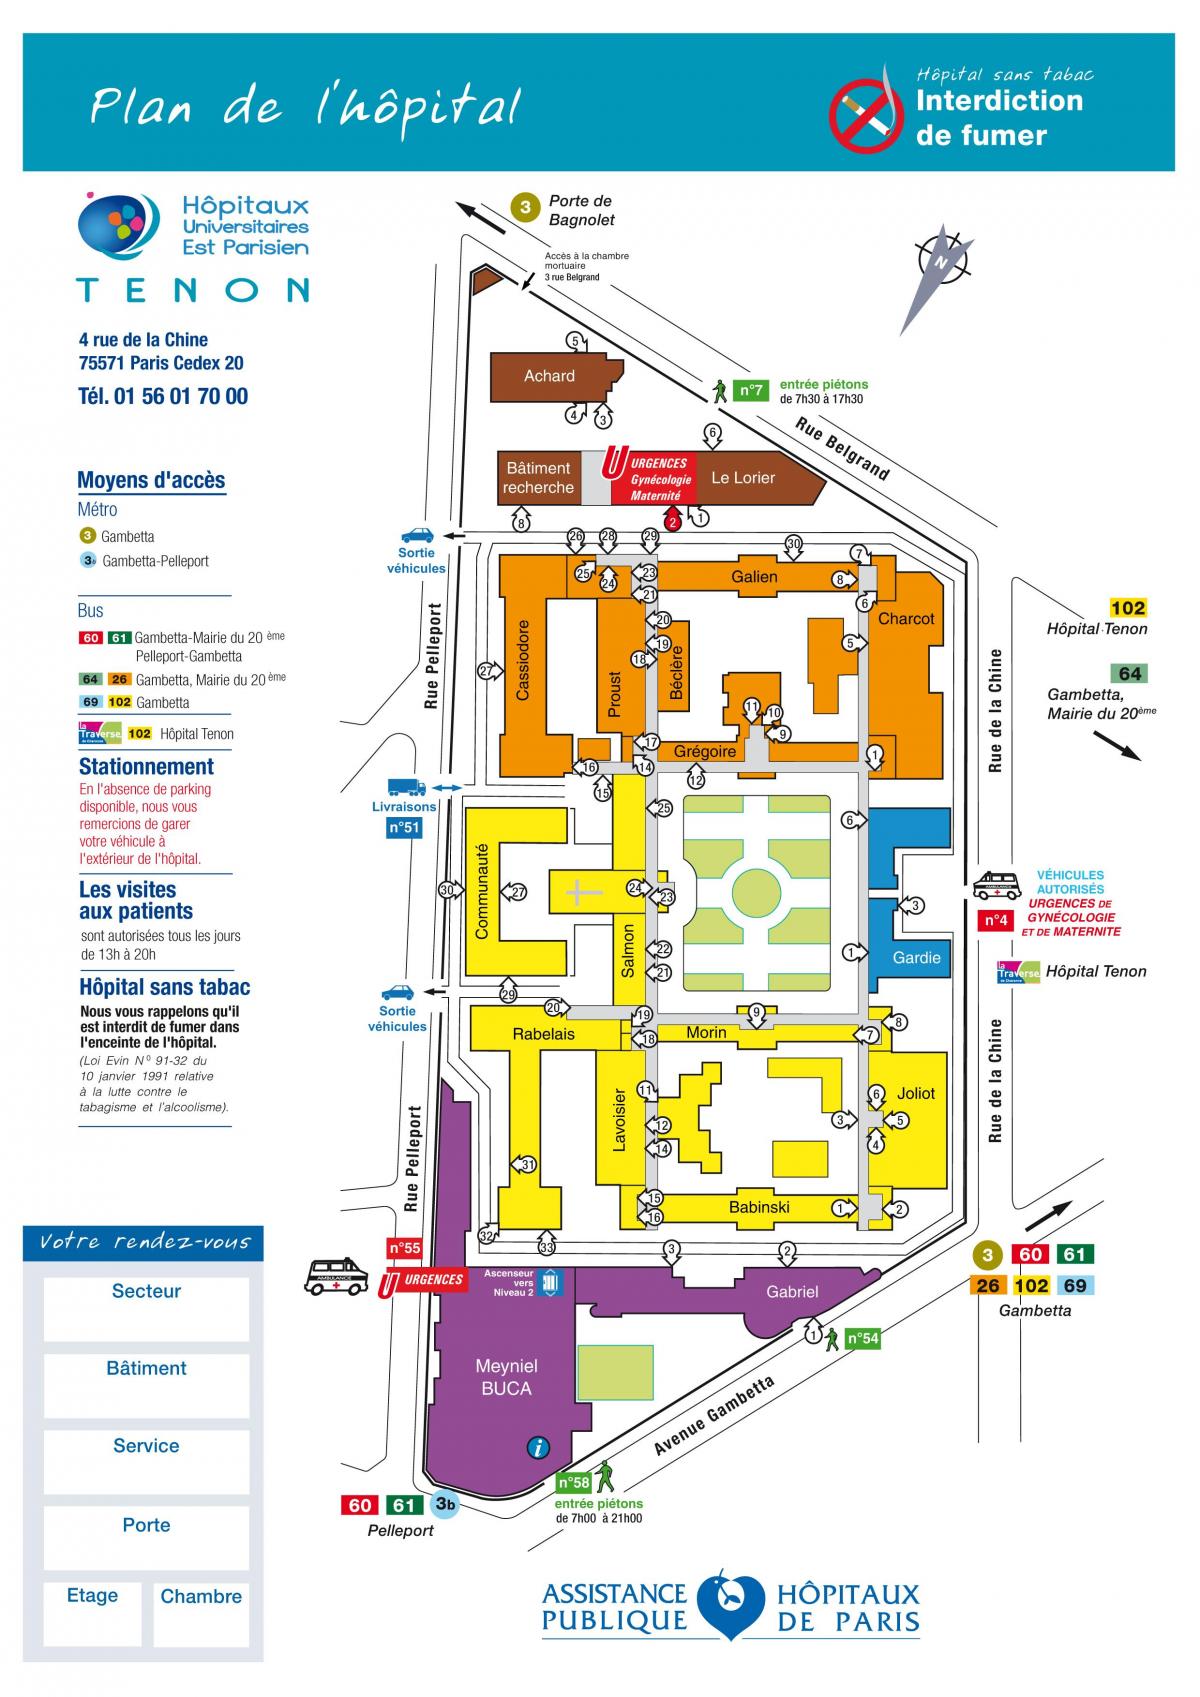 Mapa do hospital Tenon